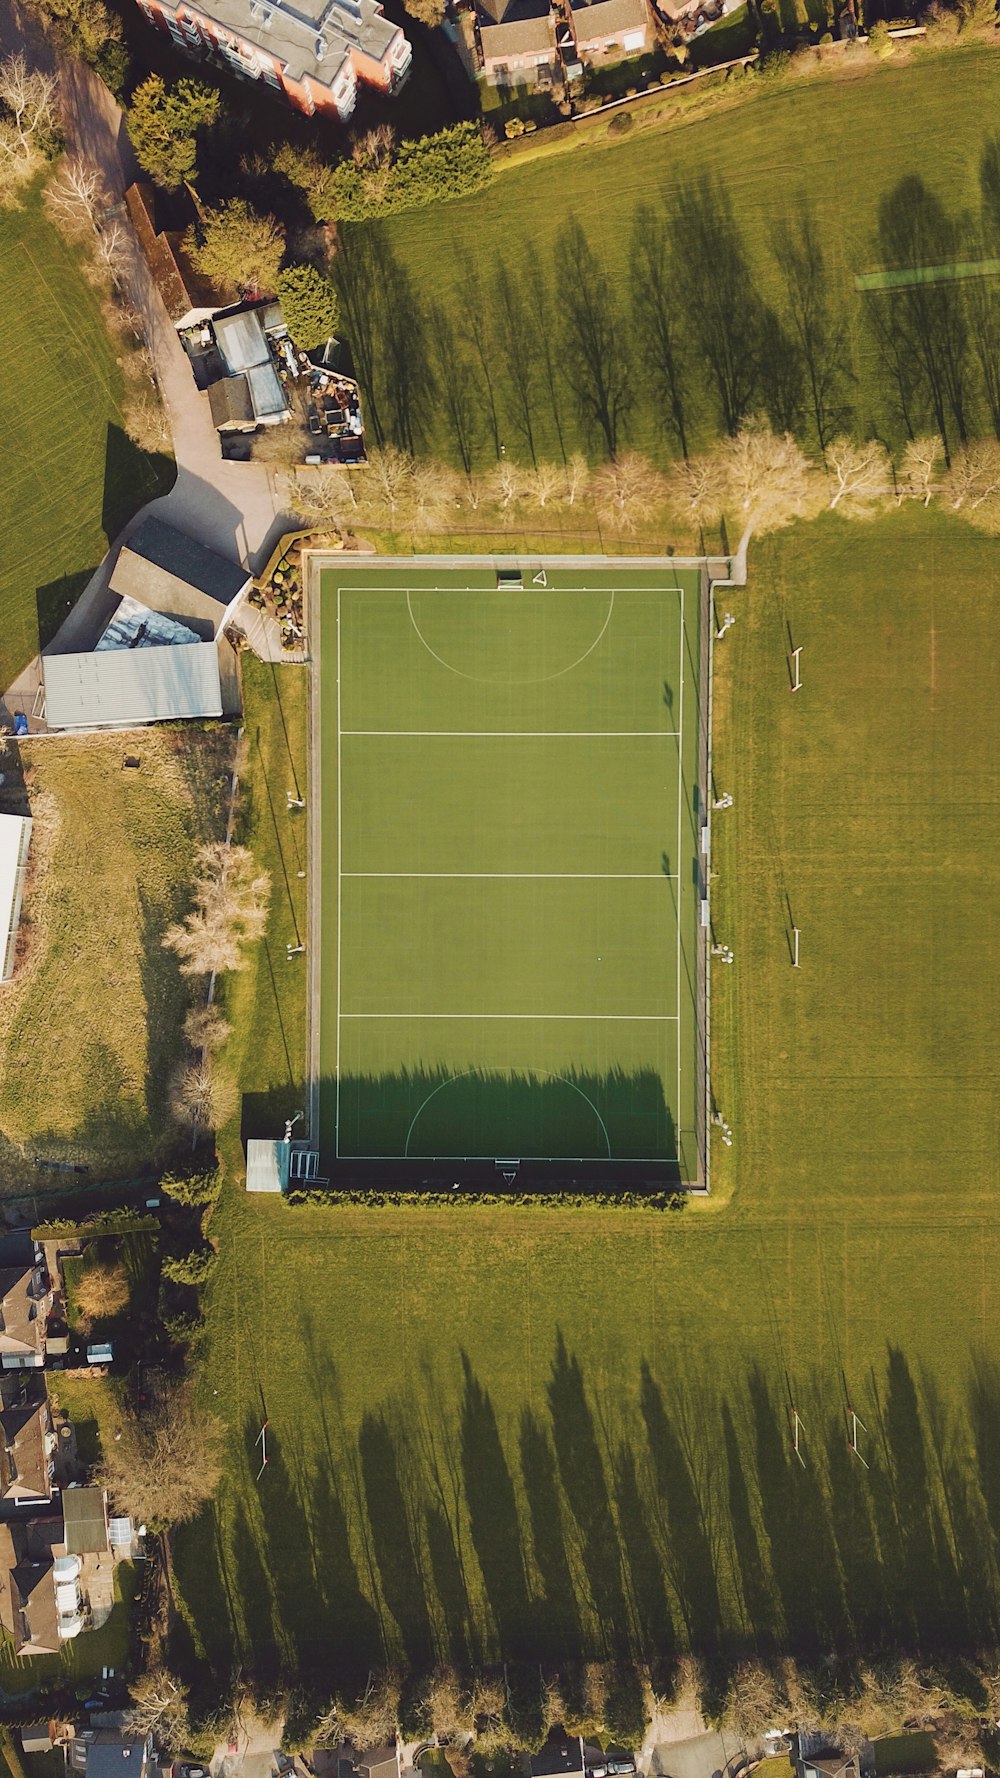 veduta aerea del campo da calcio